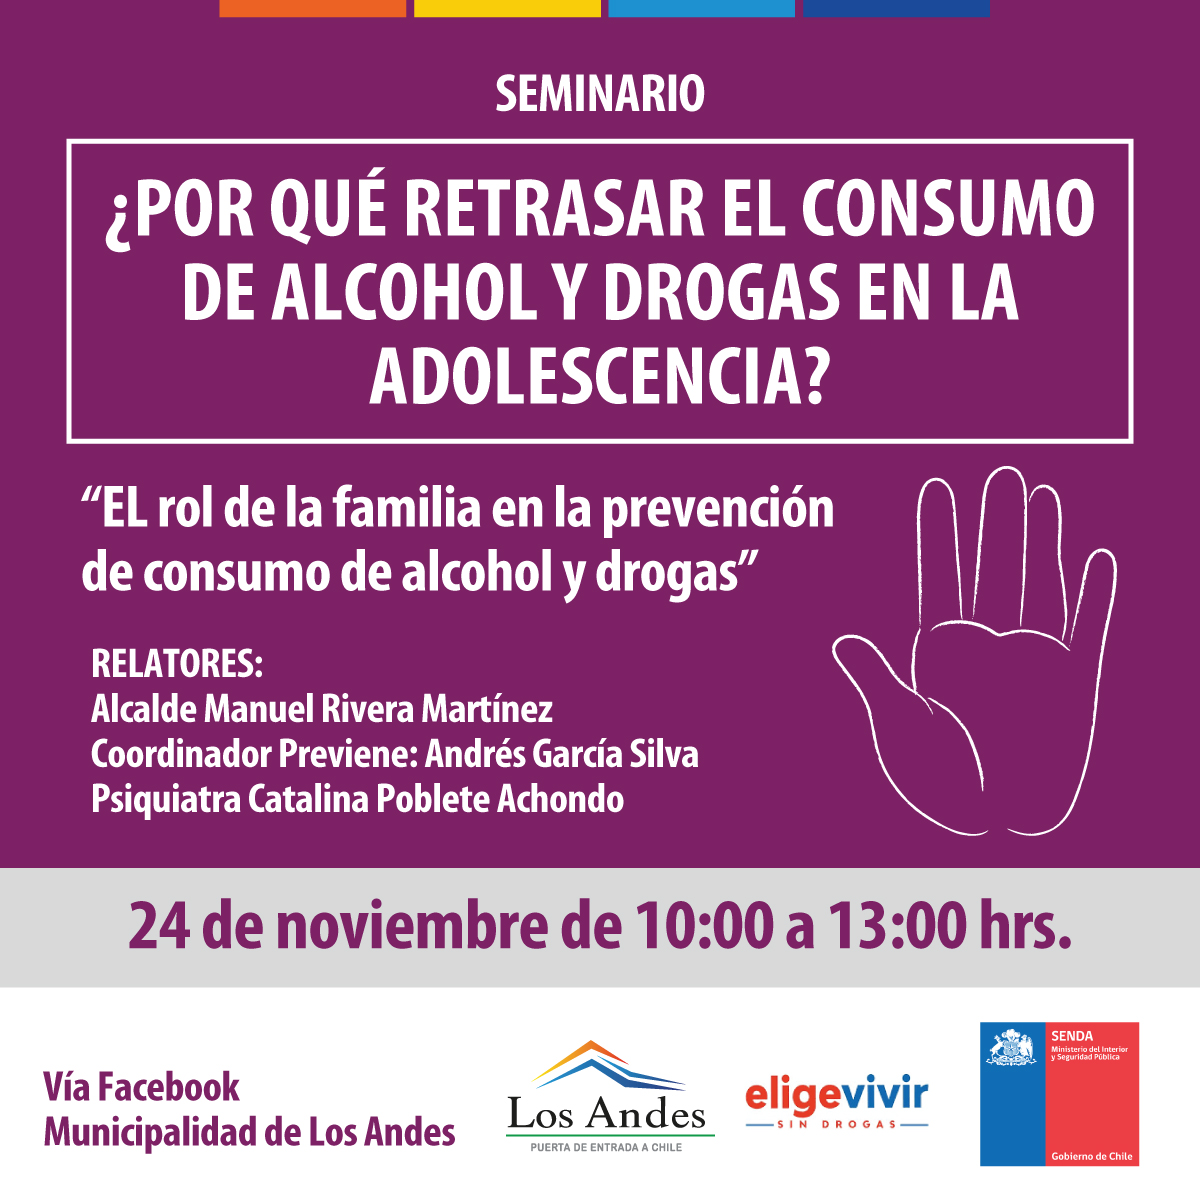 LOS ANDES: Municipalidad realizará seminario sobre prevención de drogas y alcohol en la adolescencia